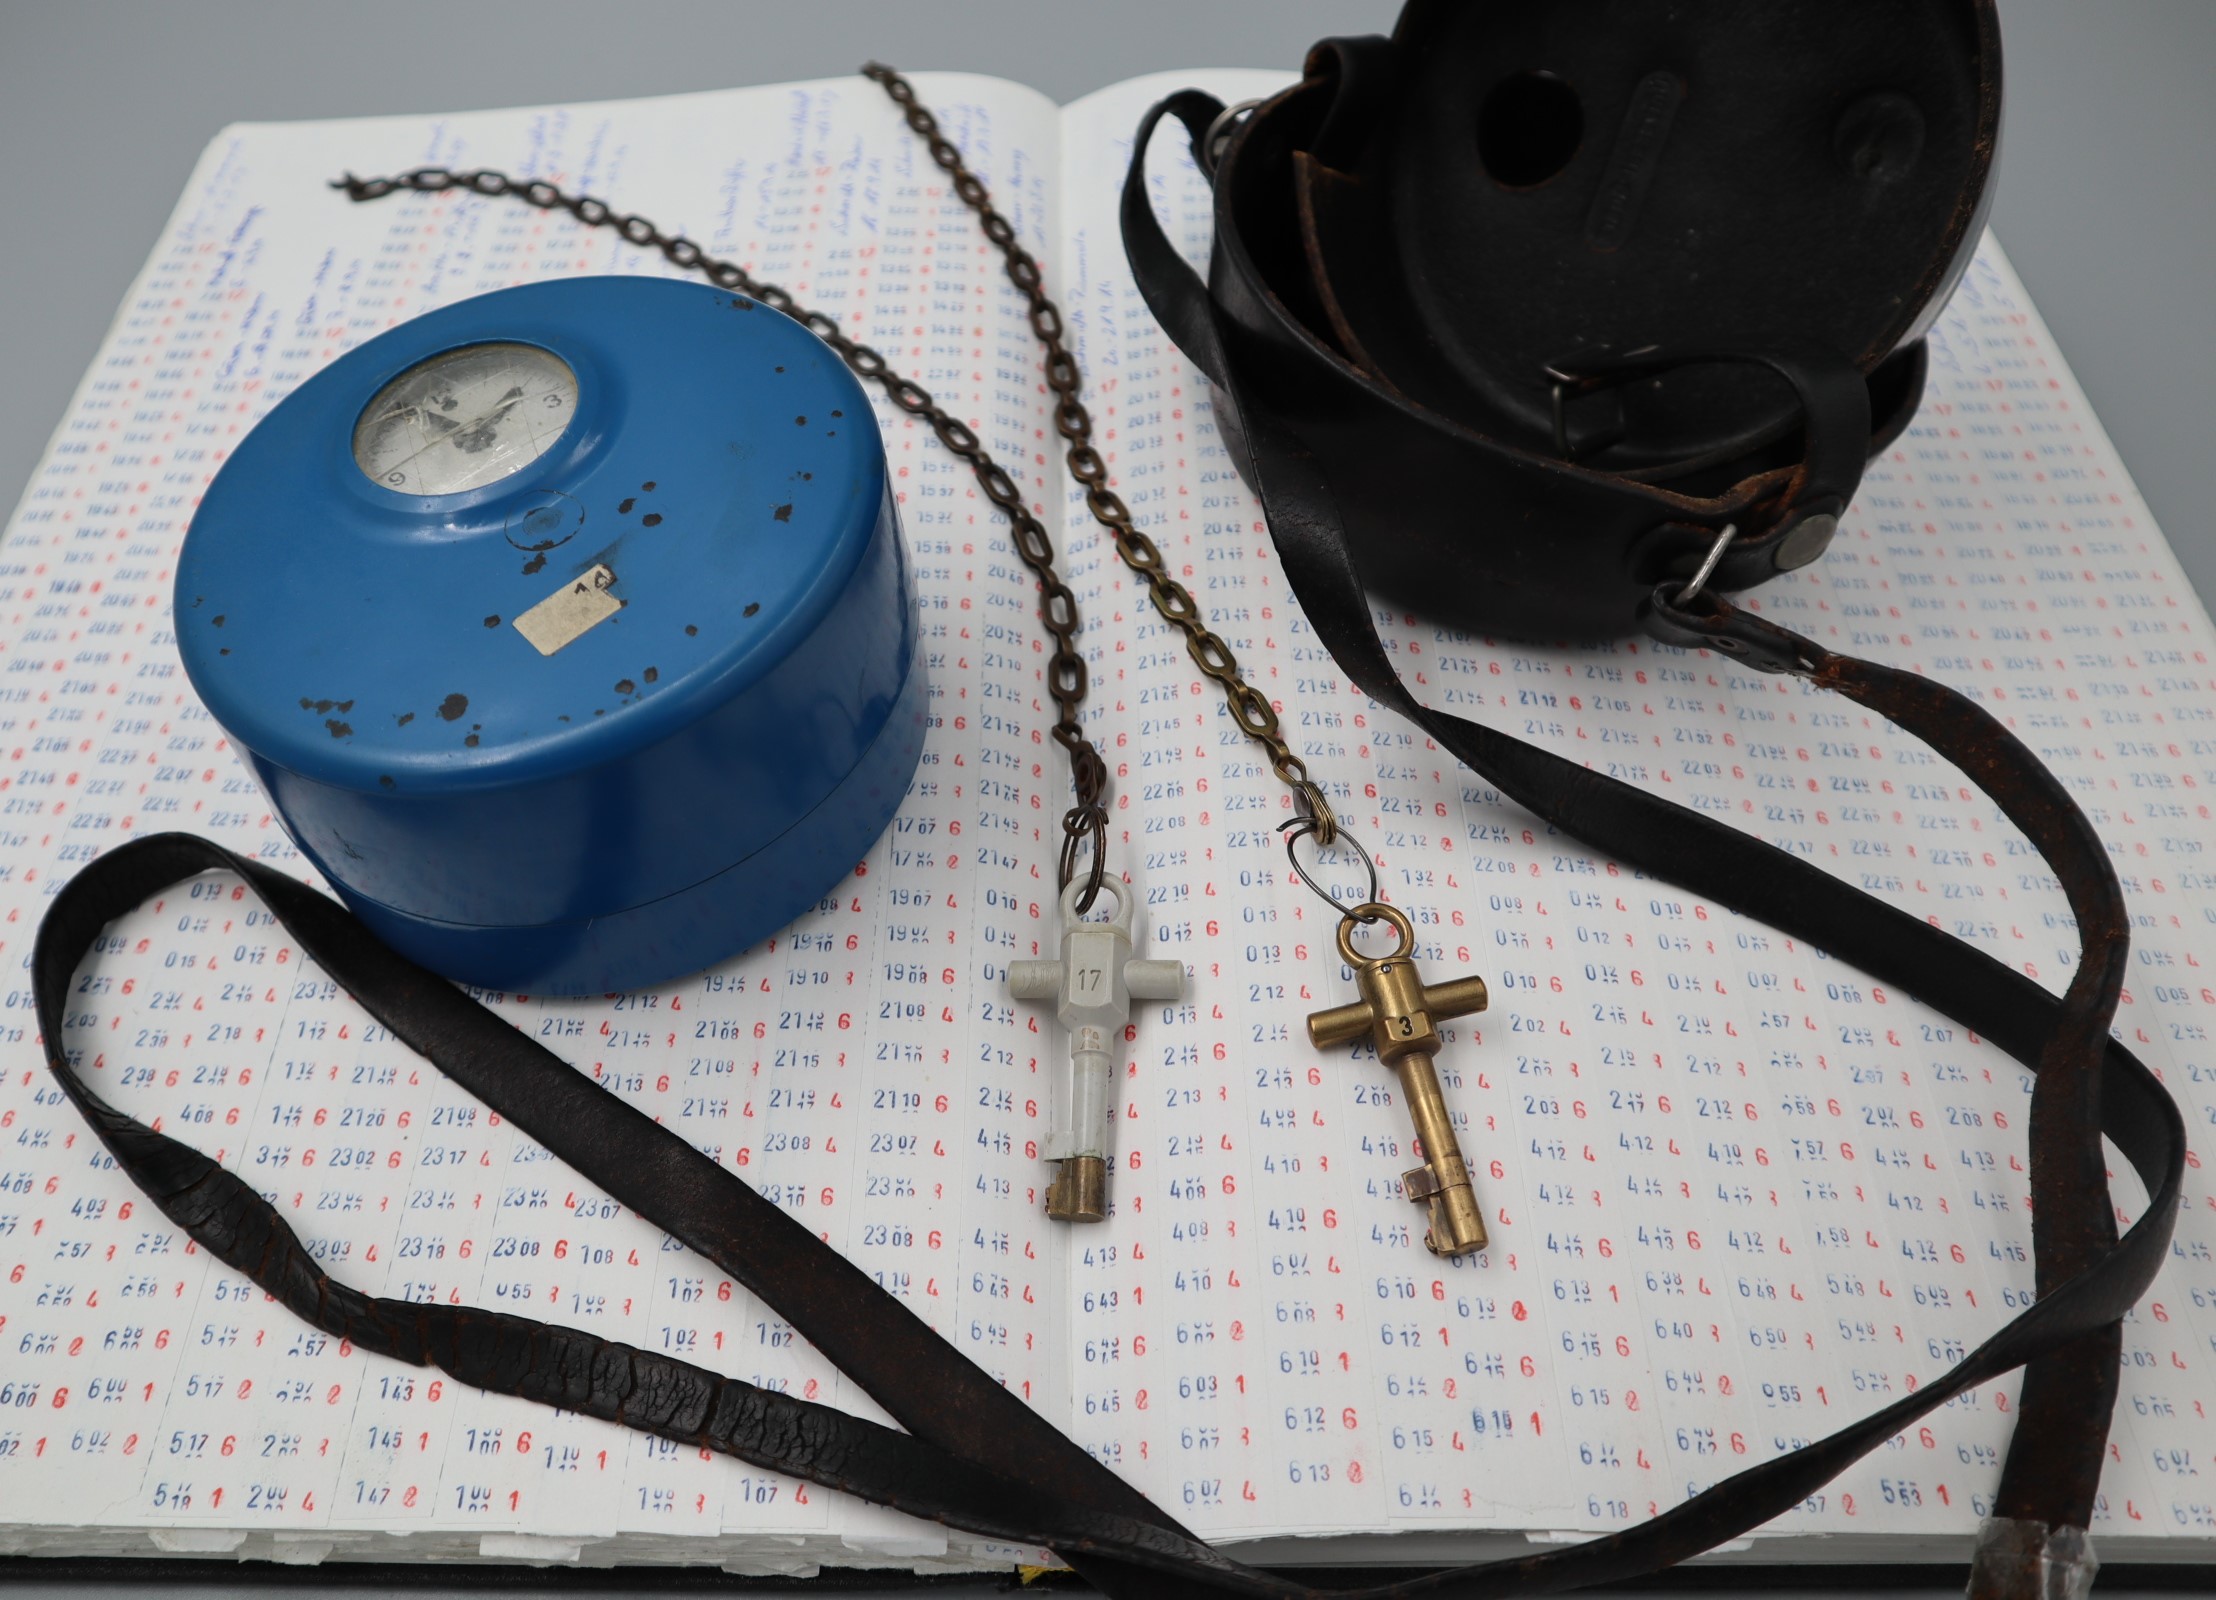 Blaues, hohes Uhrengehäuse, sogenannte Wächterkontrolluhr, die neben einem passenden Tragekoffer aus Leder und zwei Stockwerkschlüsseln auf einem Kontrollbuch liegt